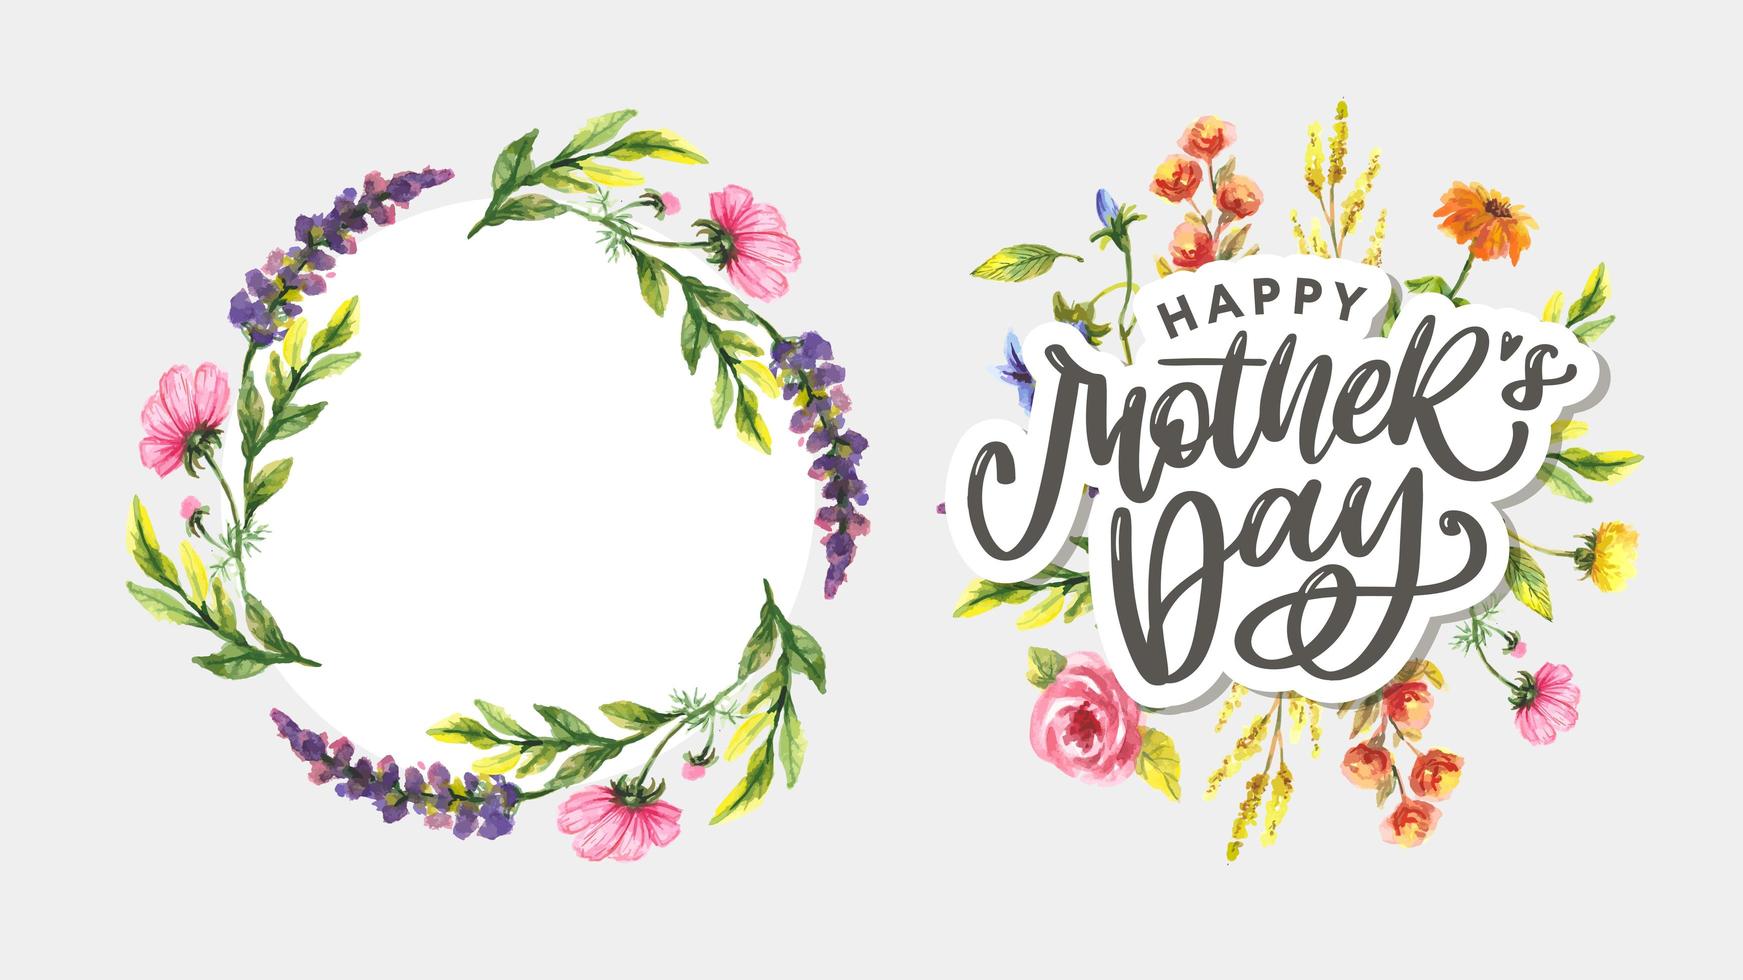 design de cartão elegante com texto elegante dia das mães em flores coloridas decoradas fundo. vetor